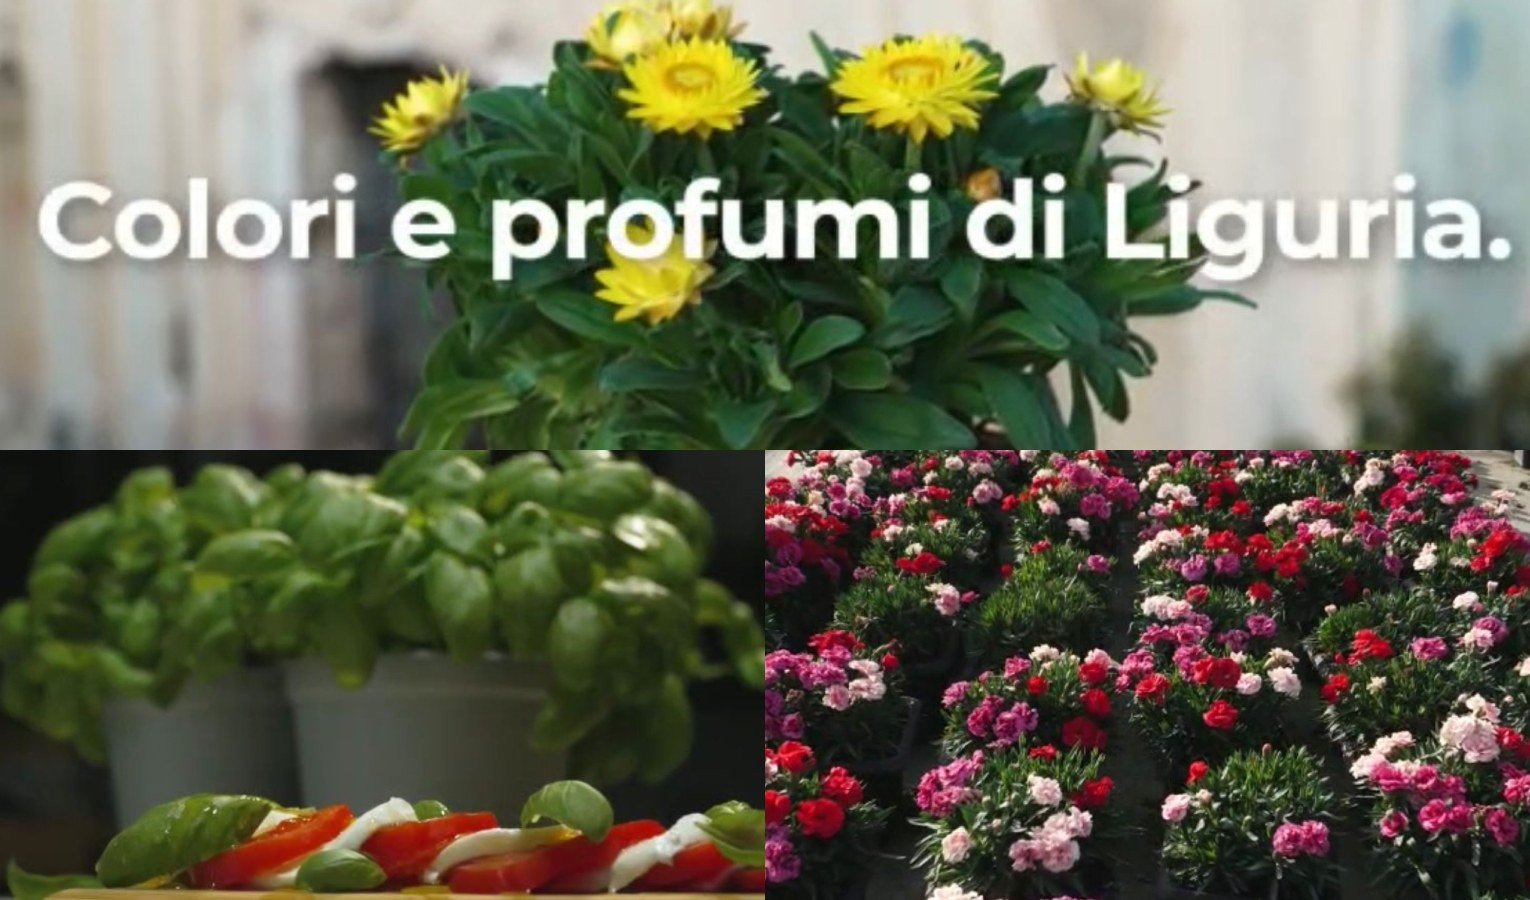 La Liguria promuove fiori e vivai sui social, in arrivo dieci spot